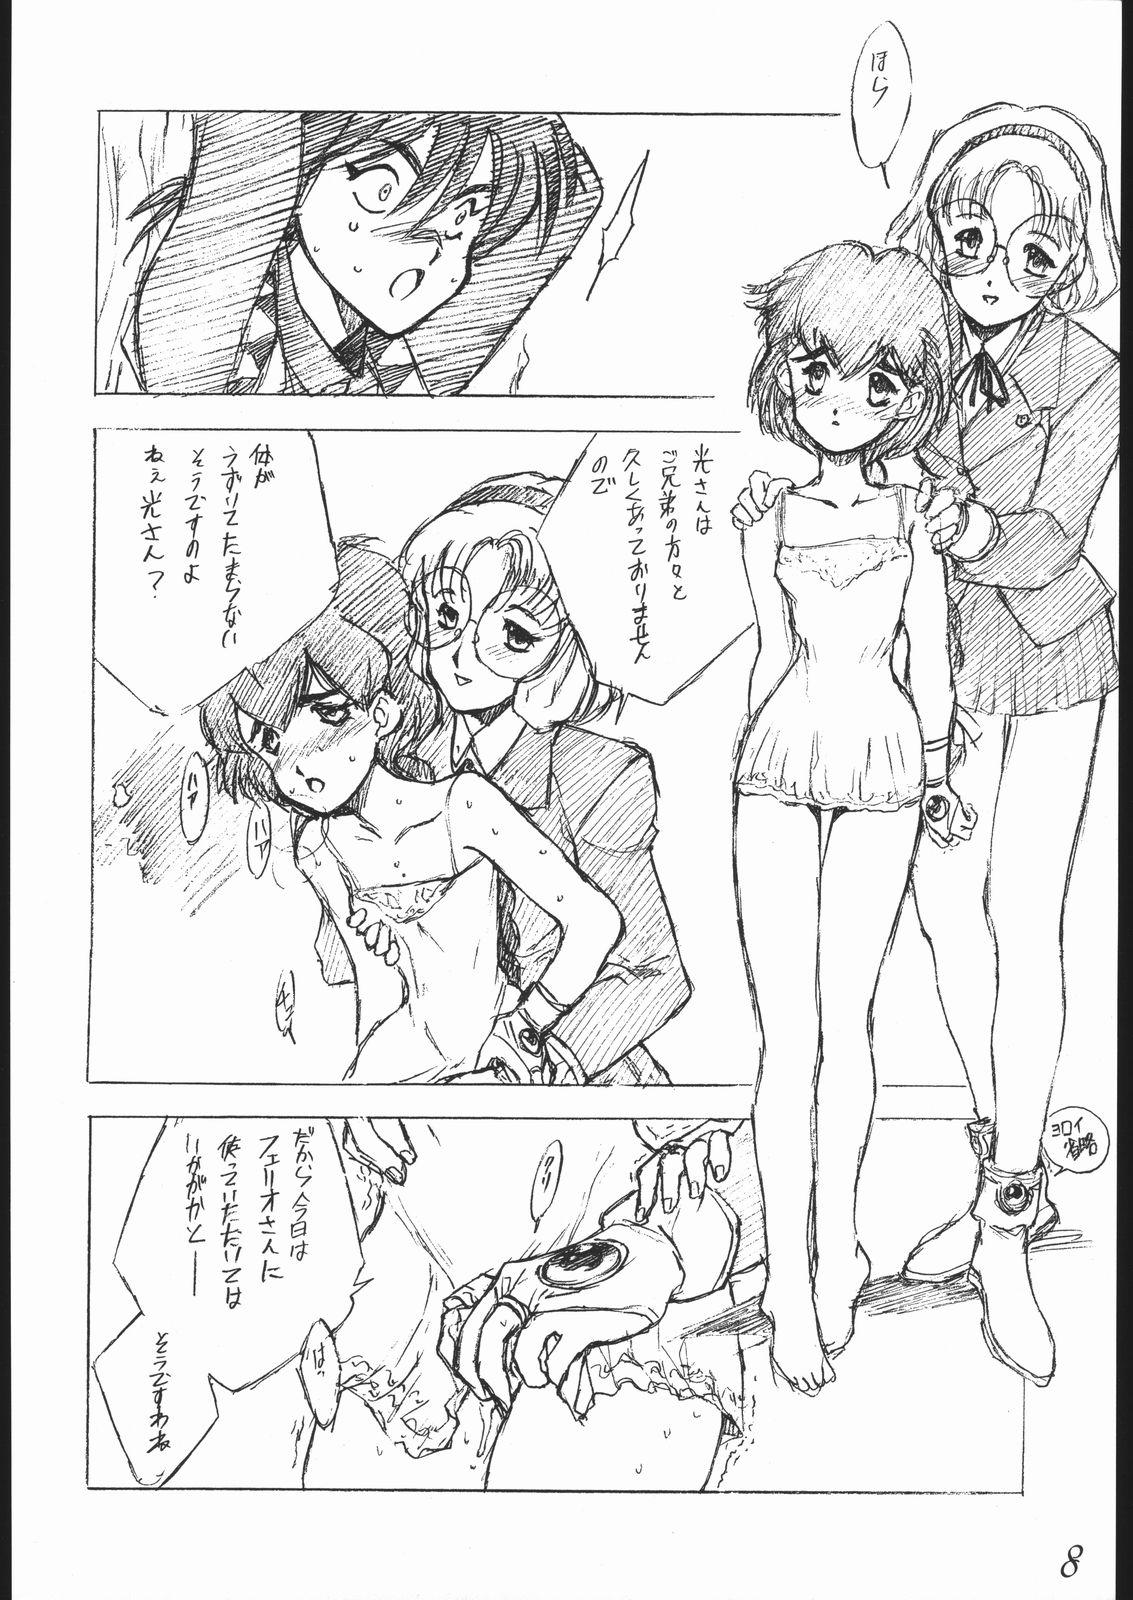 Uncensored Haruka na Kaze - Magic knight rayearth Red - Page 9